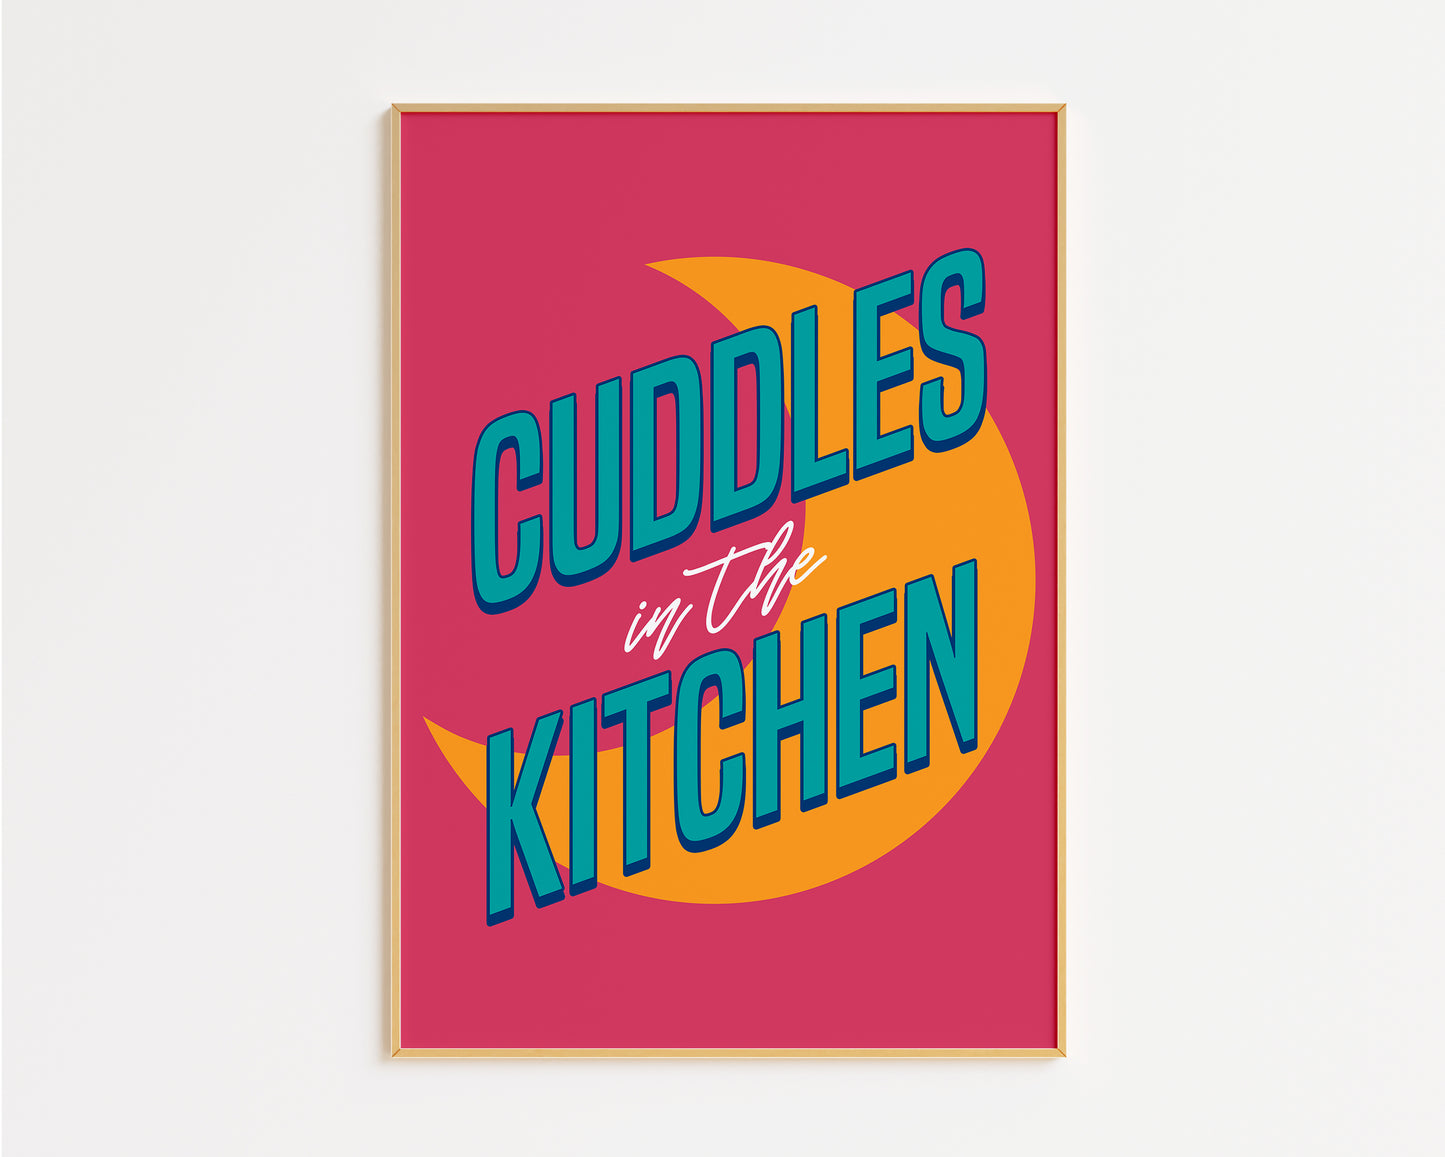 Cuddles In The Kitchen Print